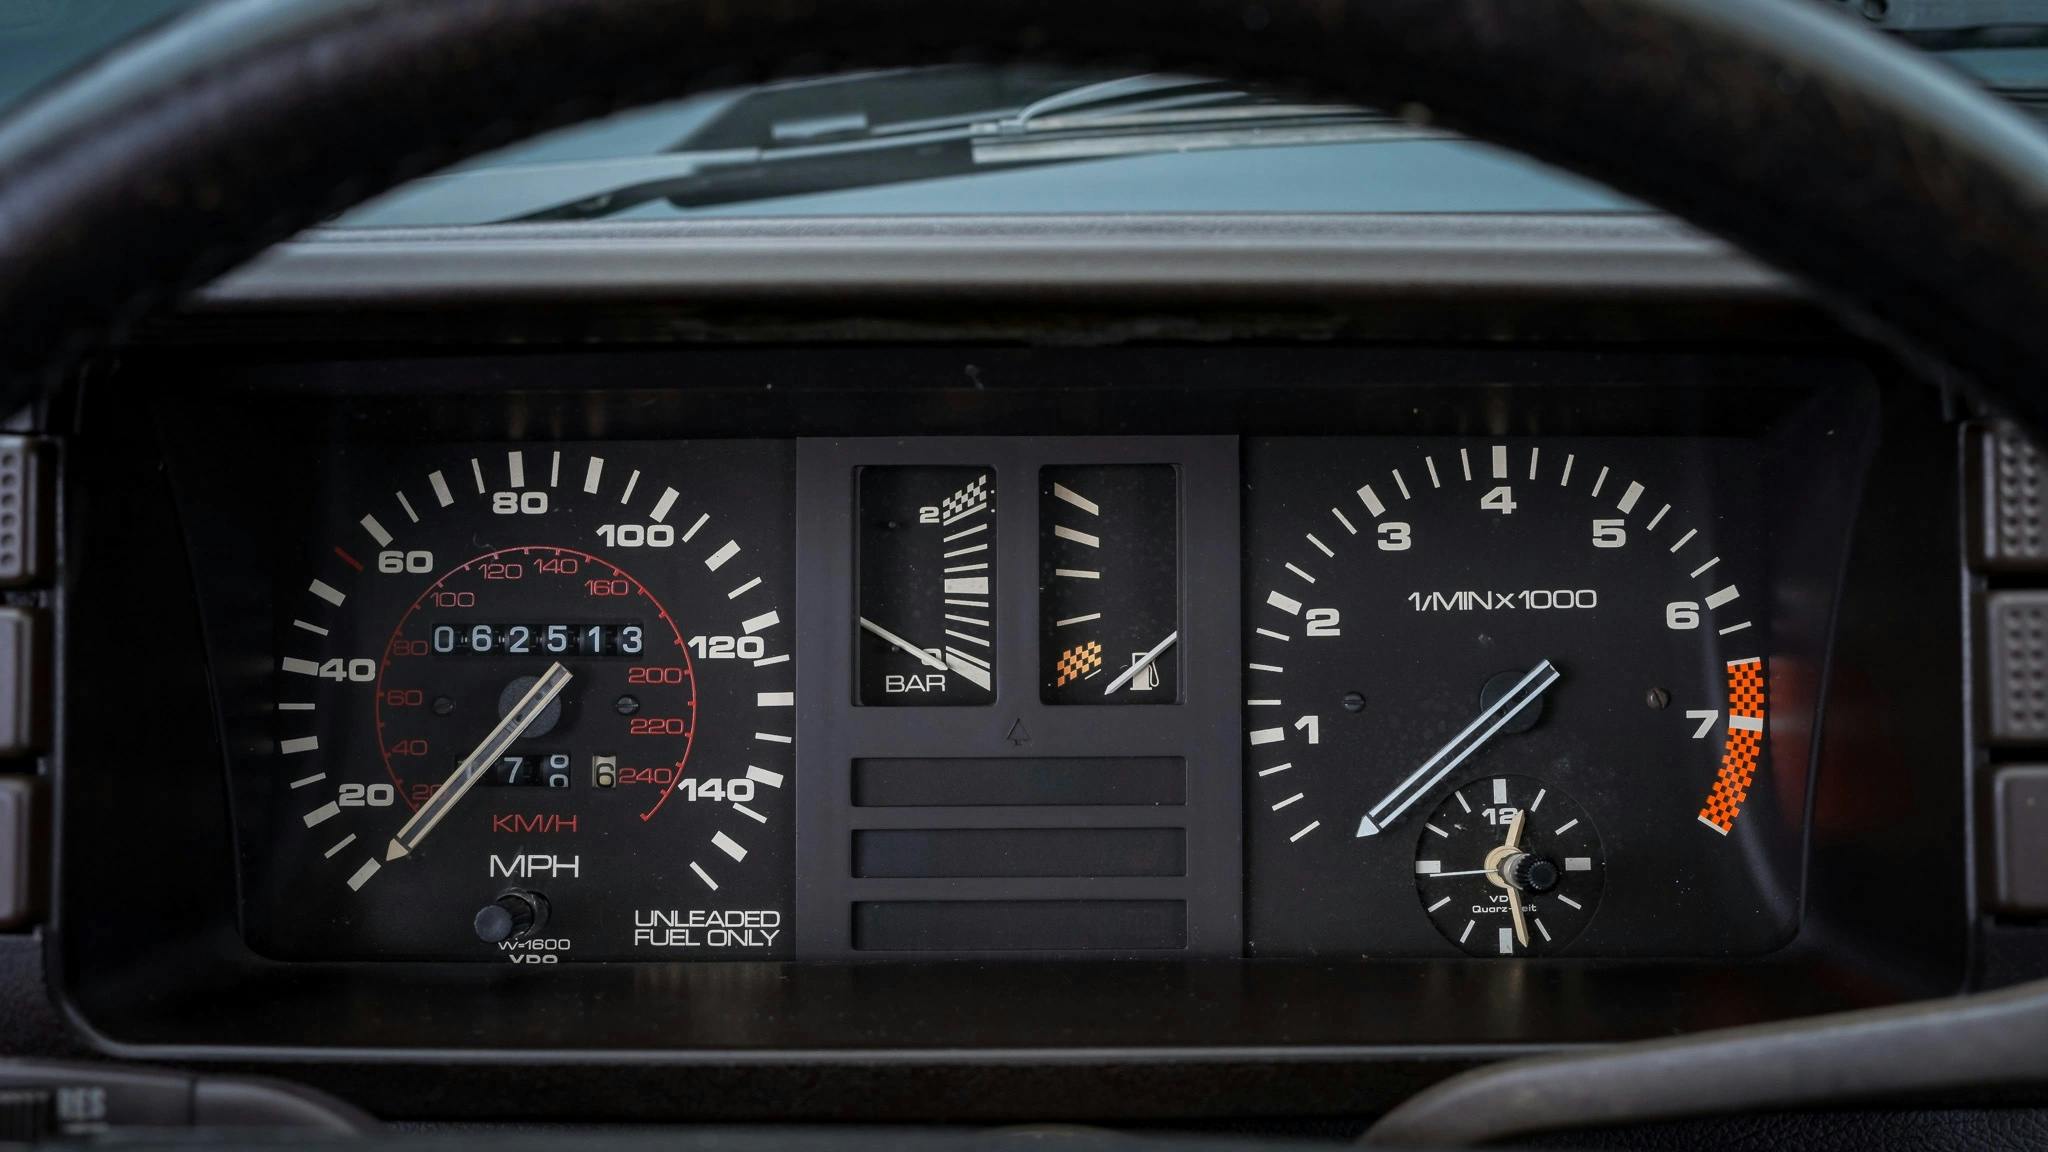 1983 Audi Ur-quattro interior dash driver display